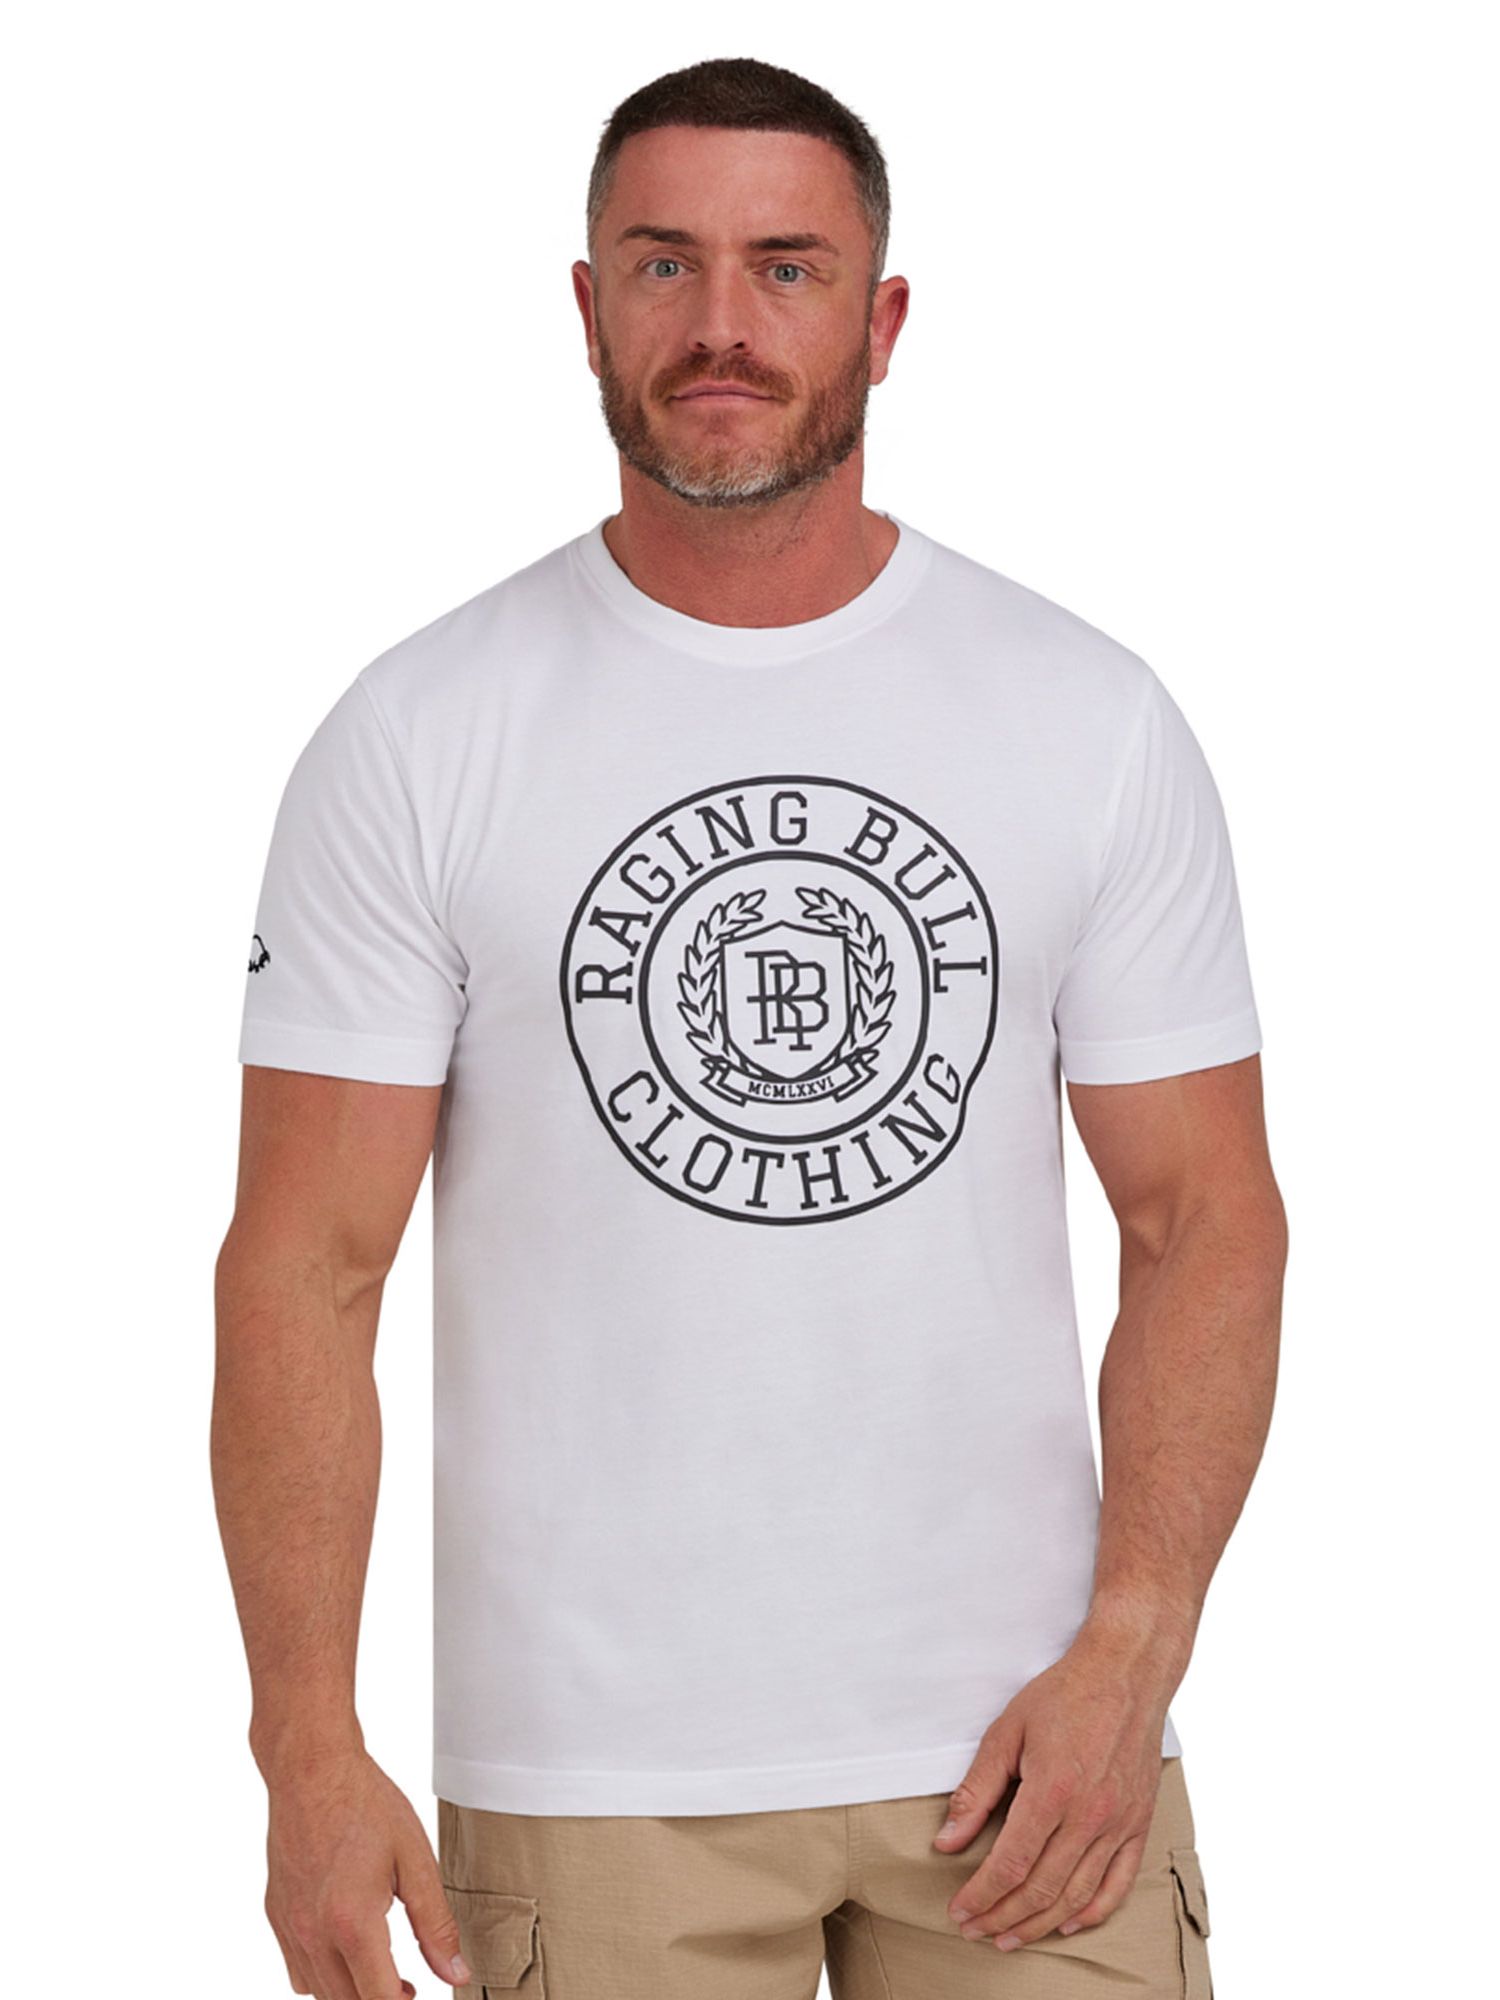 Raging Bull High Build Crest T-Shirt, White, S